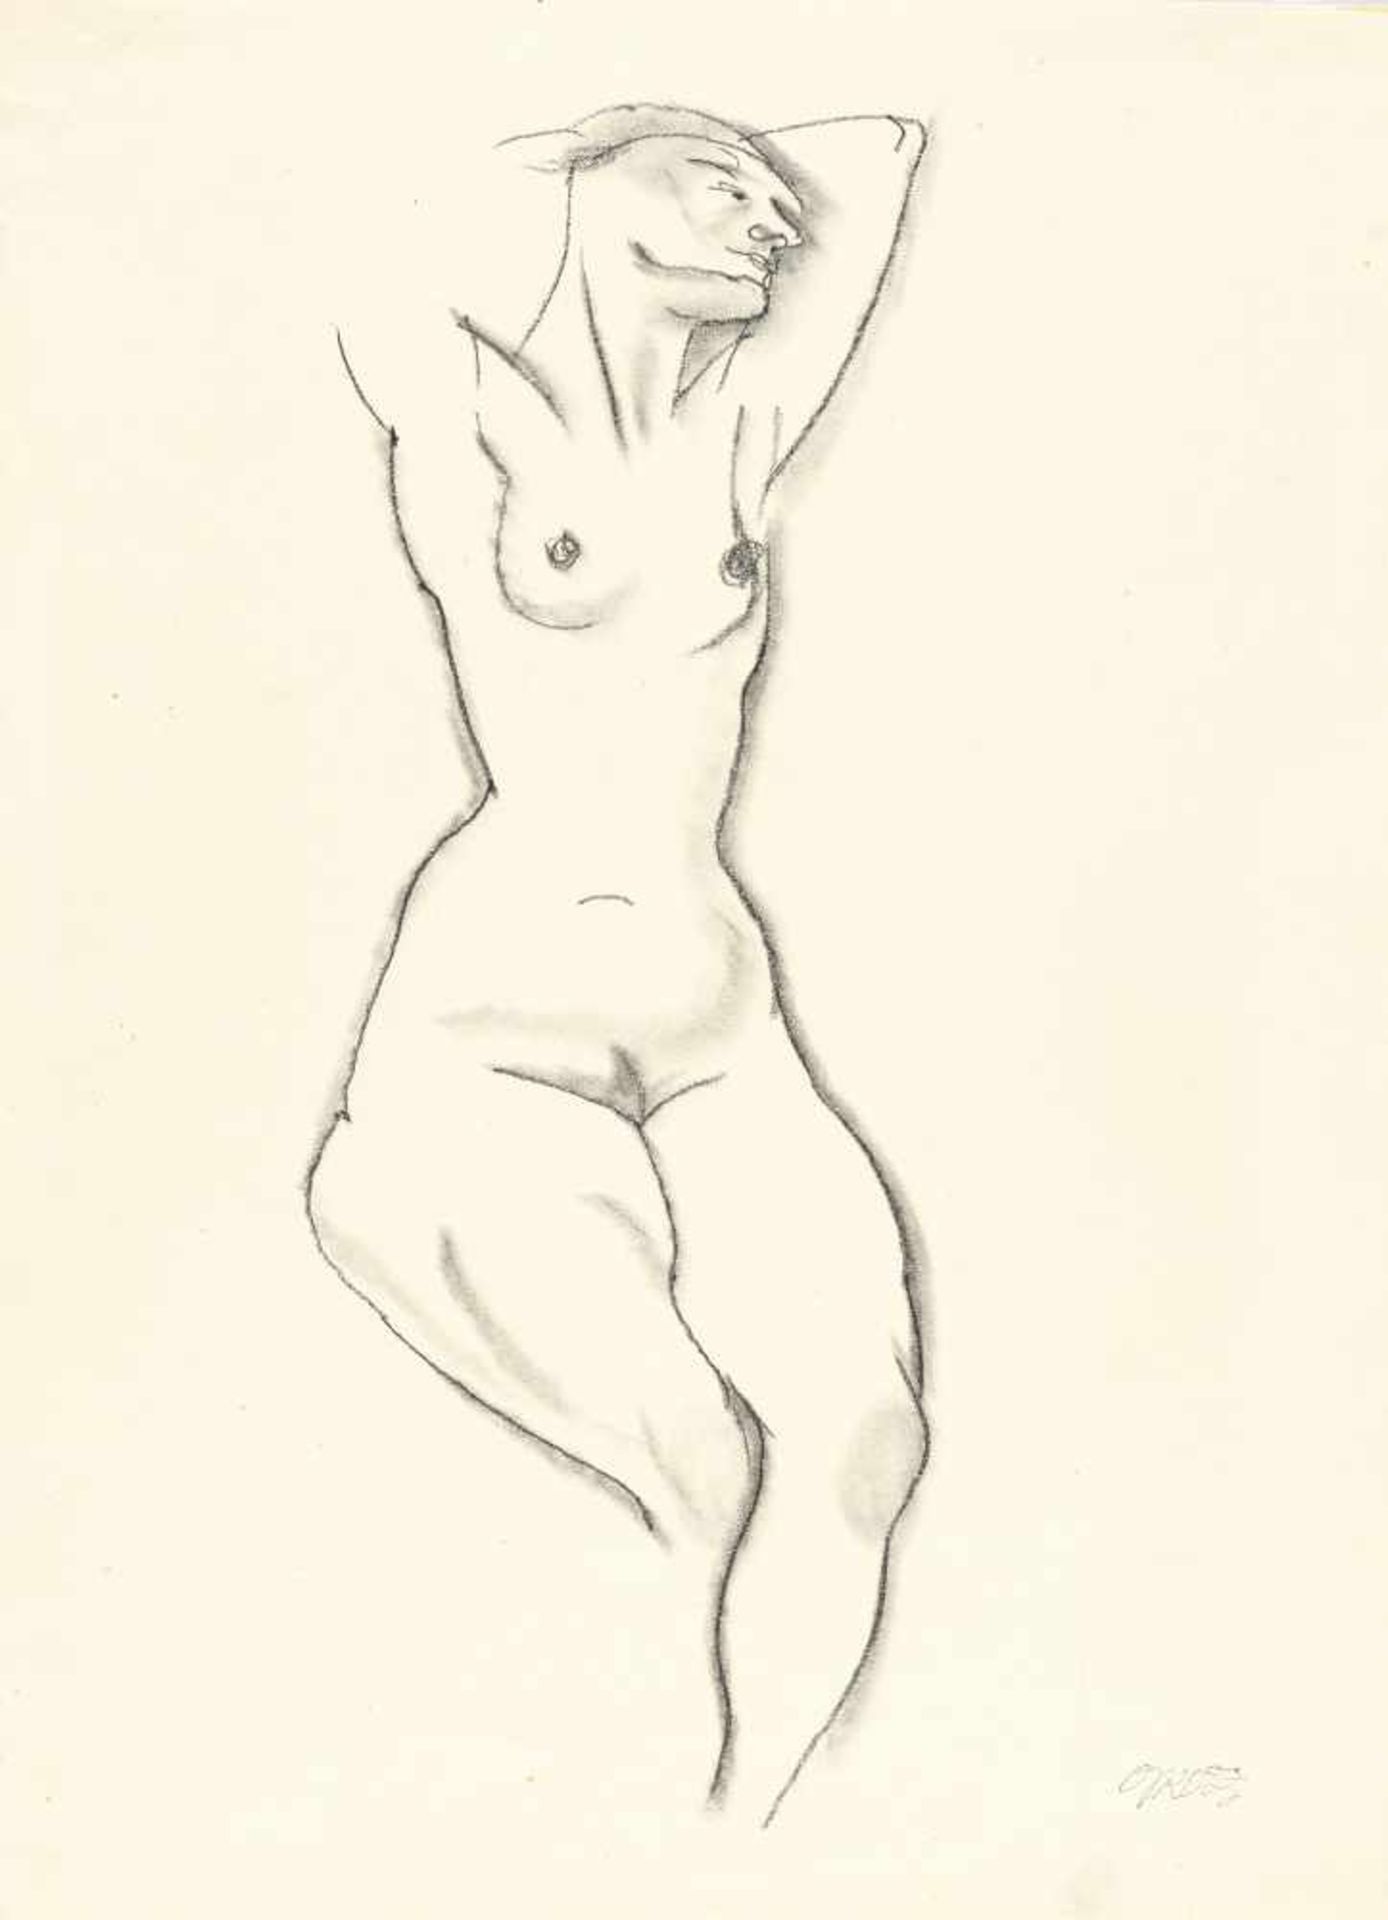 George Grosz1893 - Berlin - 1959Sitzender weiblicher Akt mit erhobenen ArmenBleistift, teils